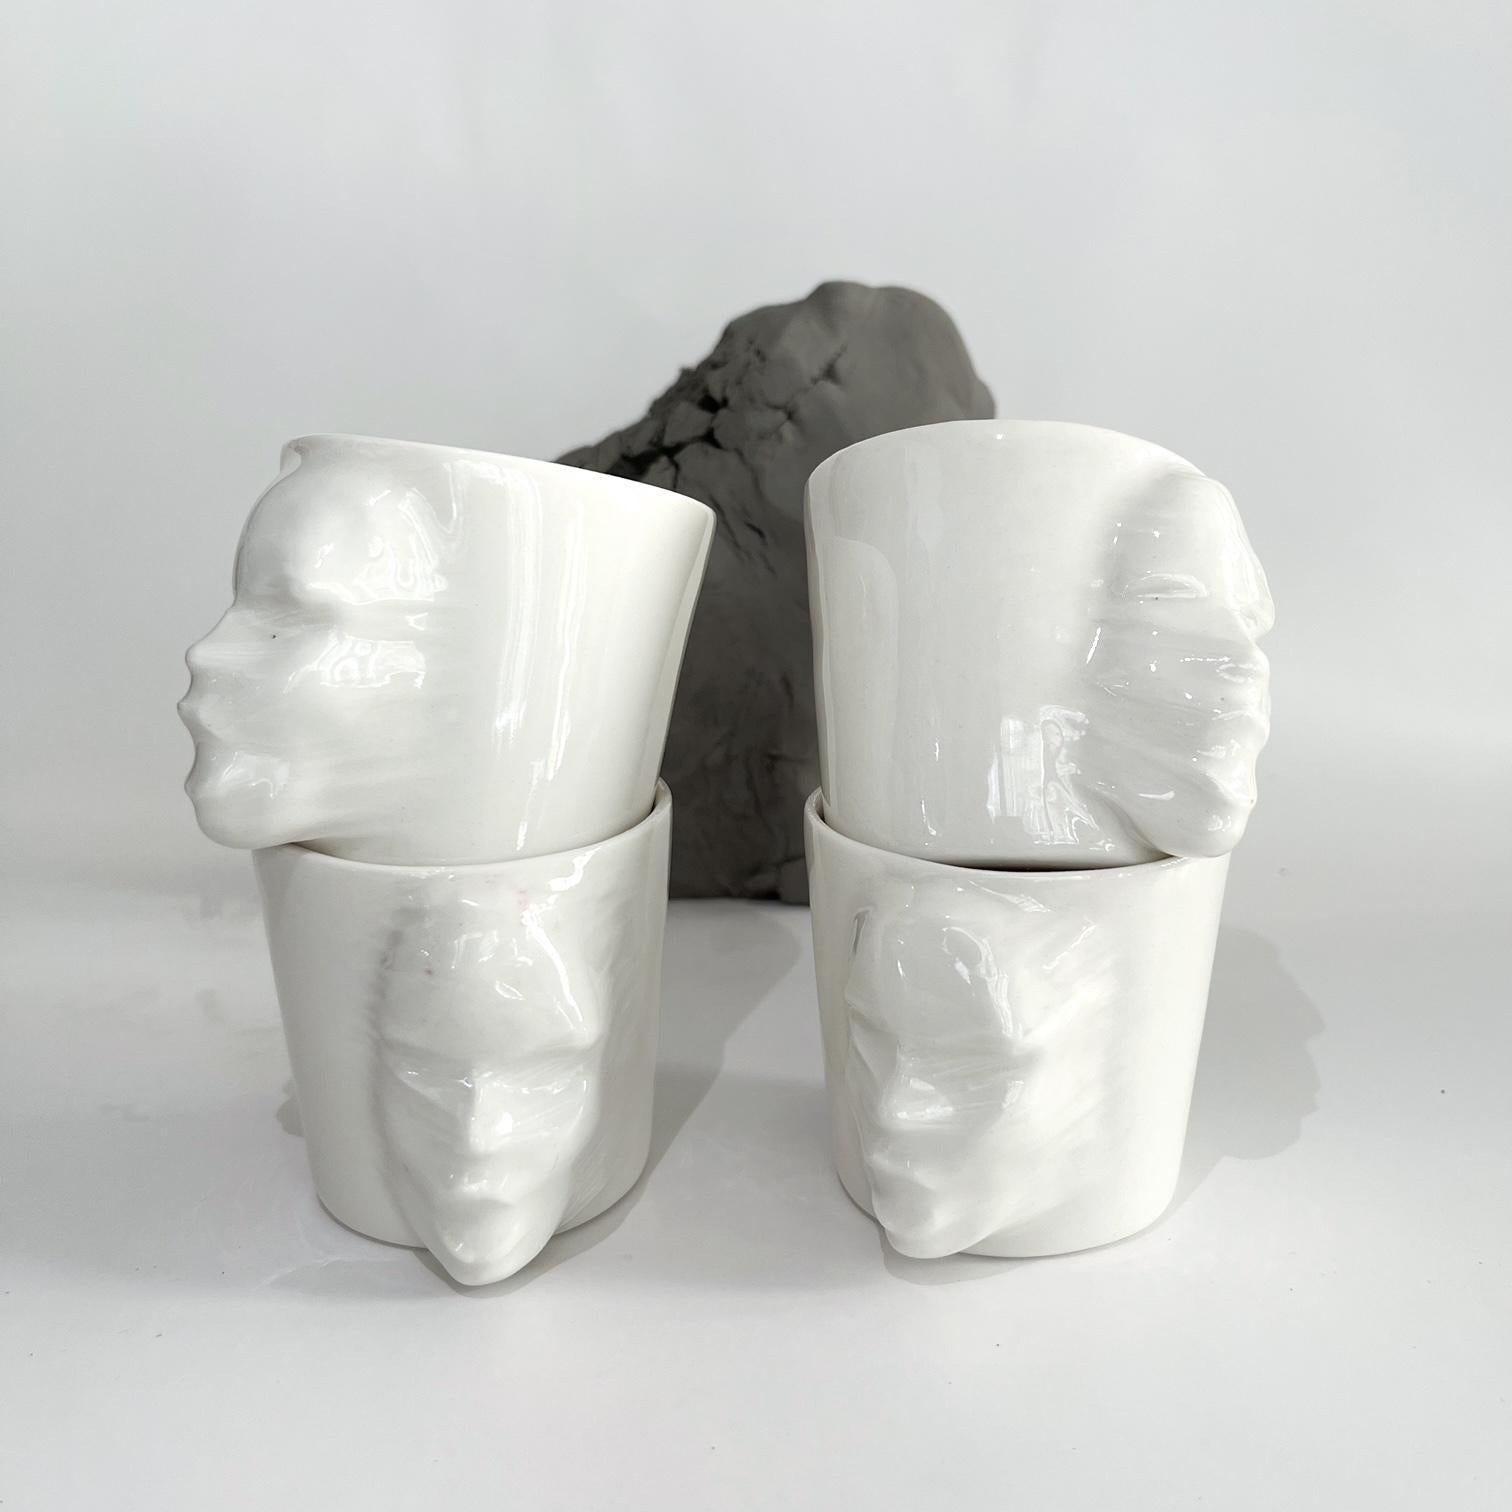 Un ensemble de 4 tasses sculpturales en porcelaine fabriquées à la main par l'artiste céramiste Hulya Sozer. 
Glaçage alimentaire.
Lavable au lave-vaisselle.

Hauteur : 6cm / Profondeur : 8cm / Diamètre : 6cm
Volume : 100ml
Le set comprend 4 tasses